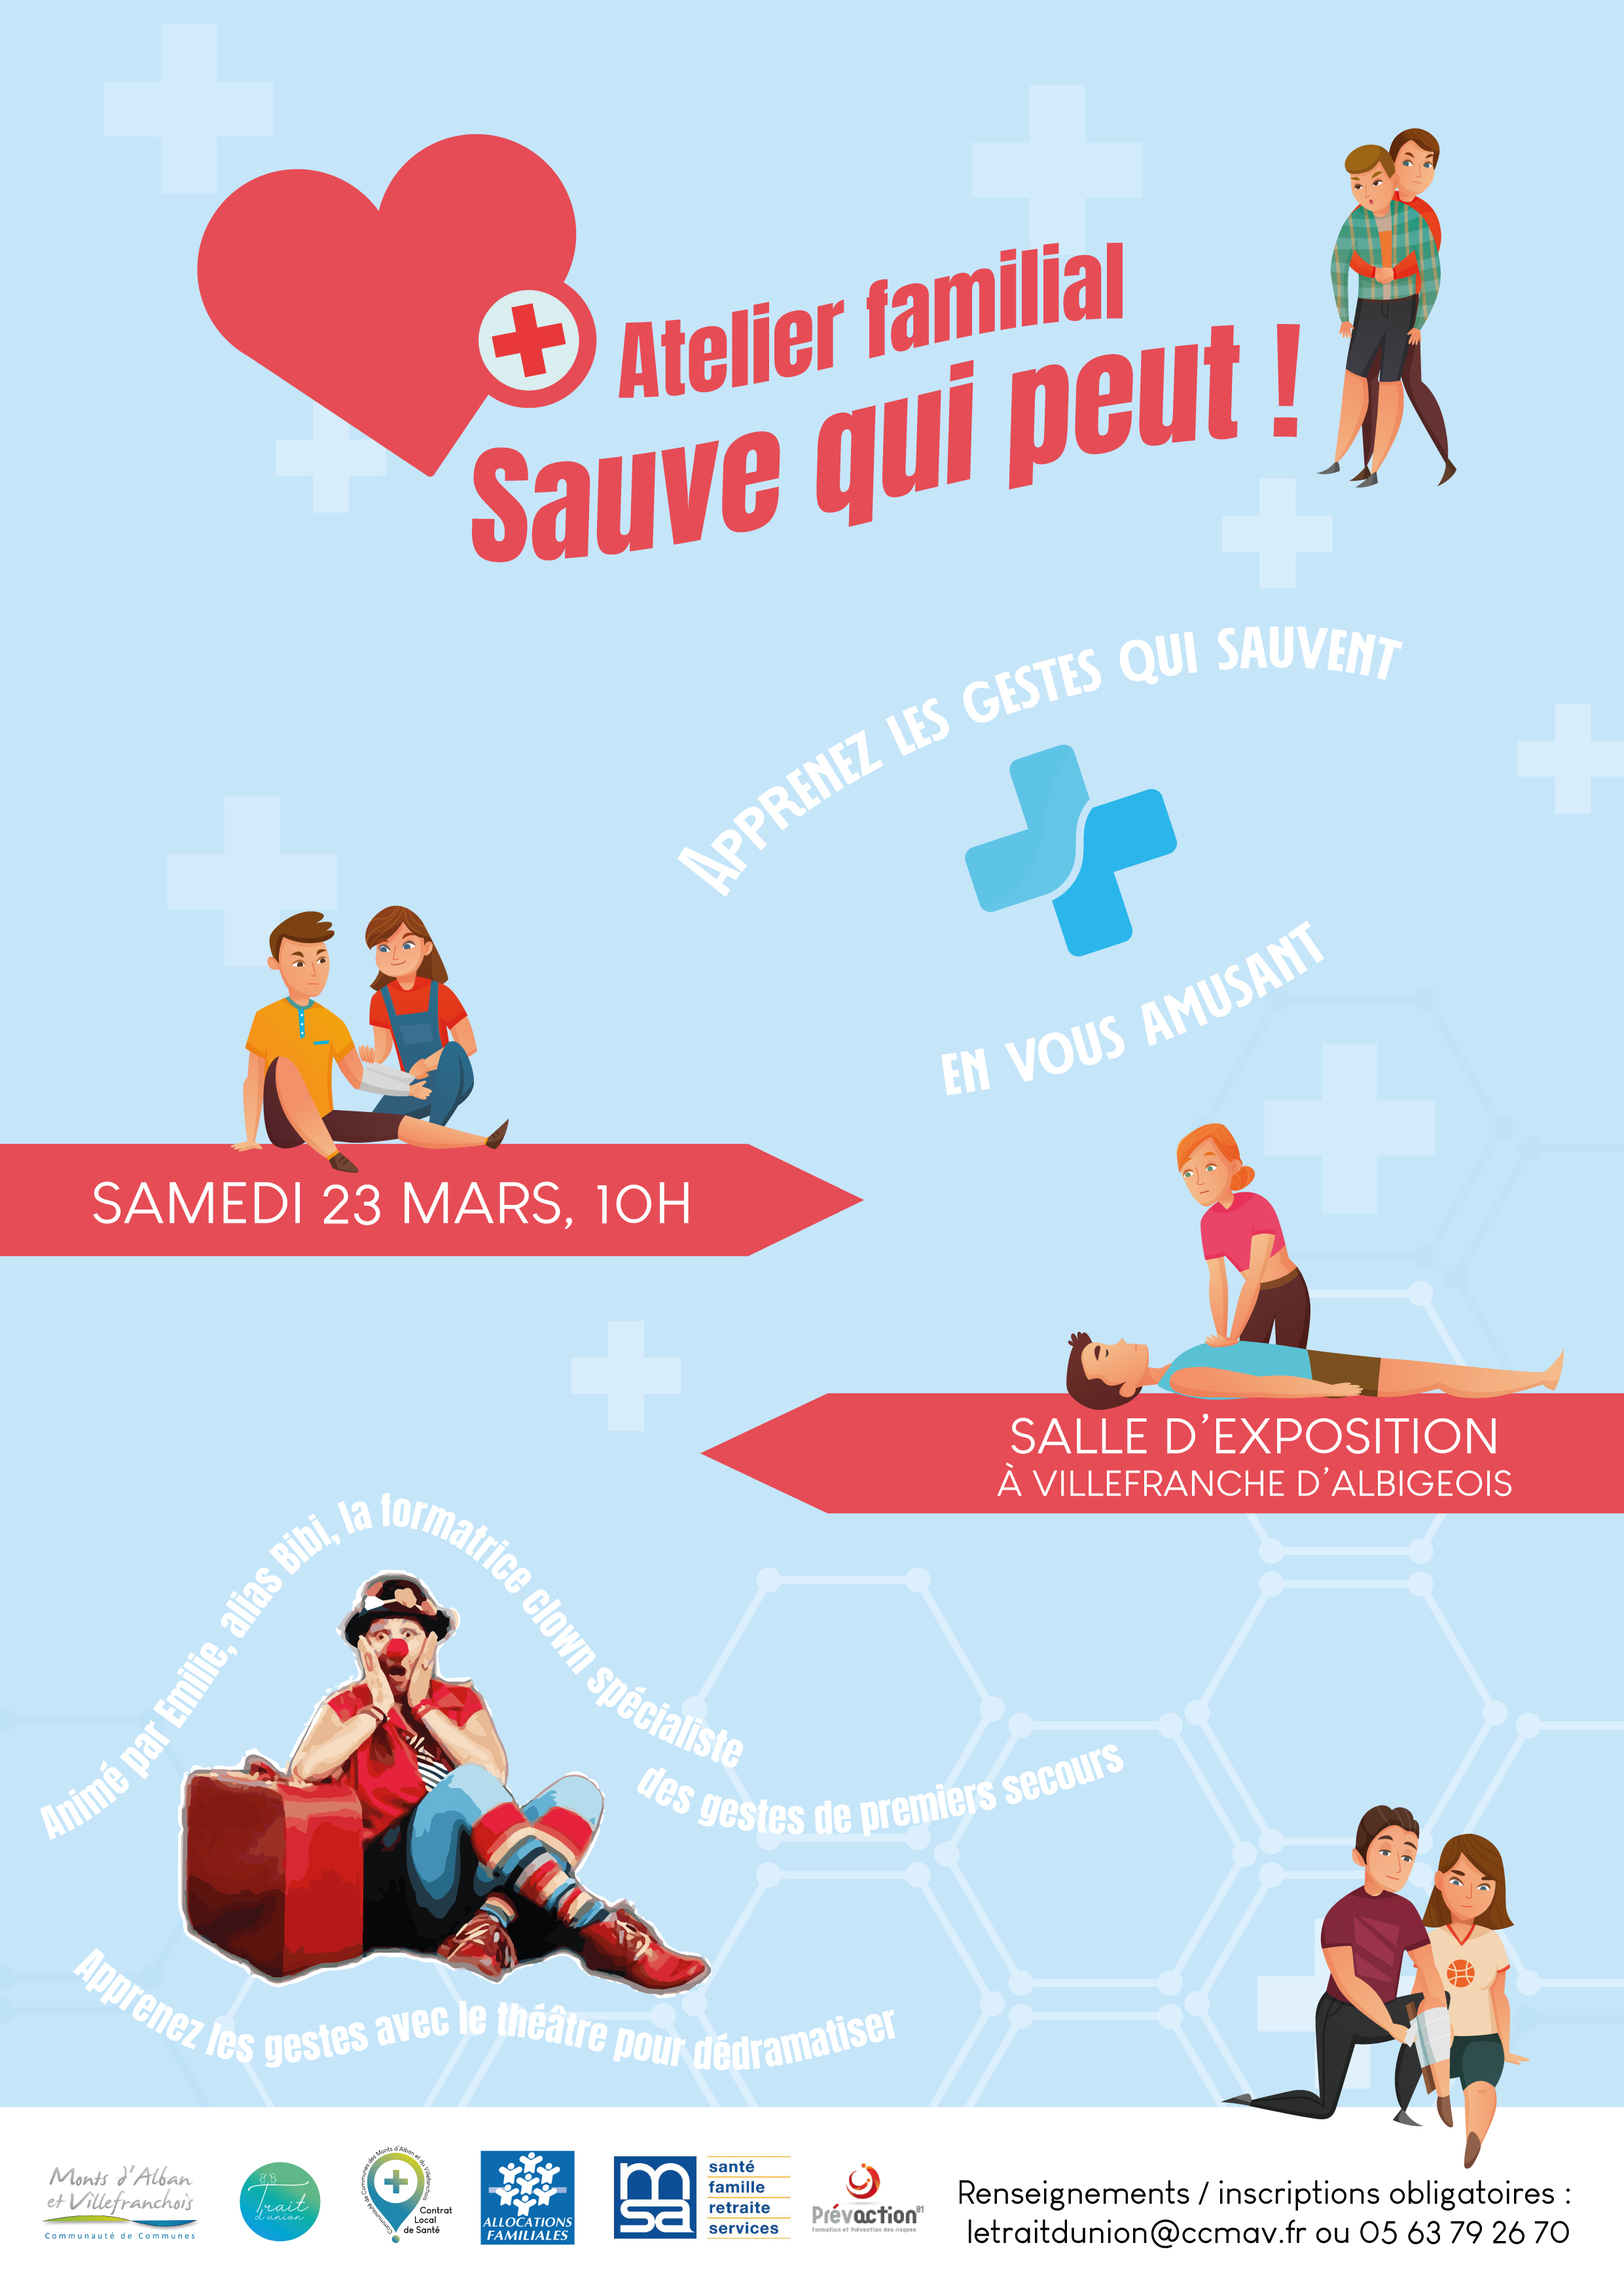 Atelier familial "Sauve qui peut !" à Villefranche d'Albigeois : ANNULE